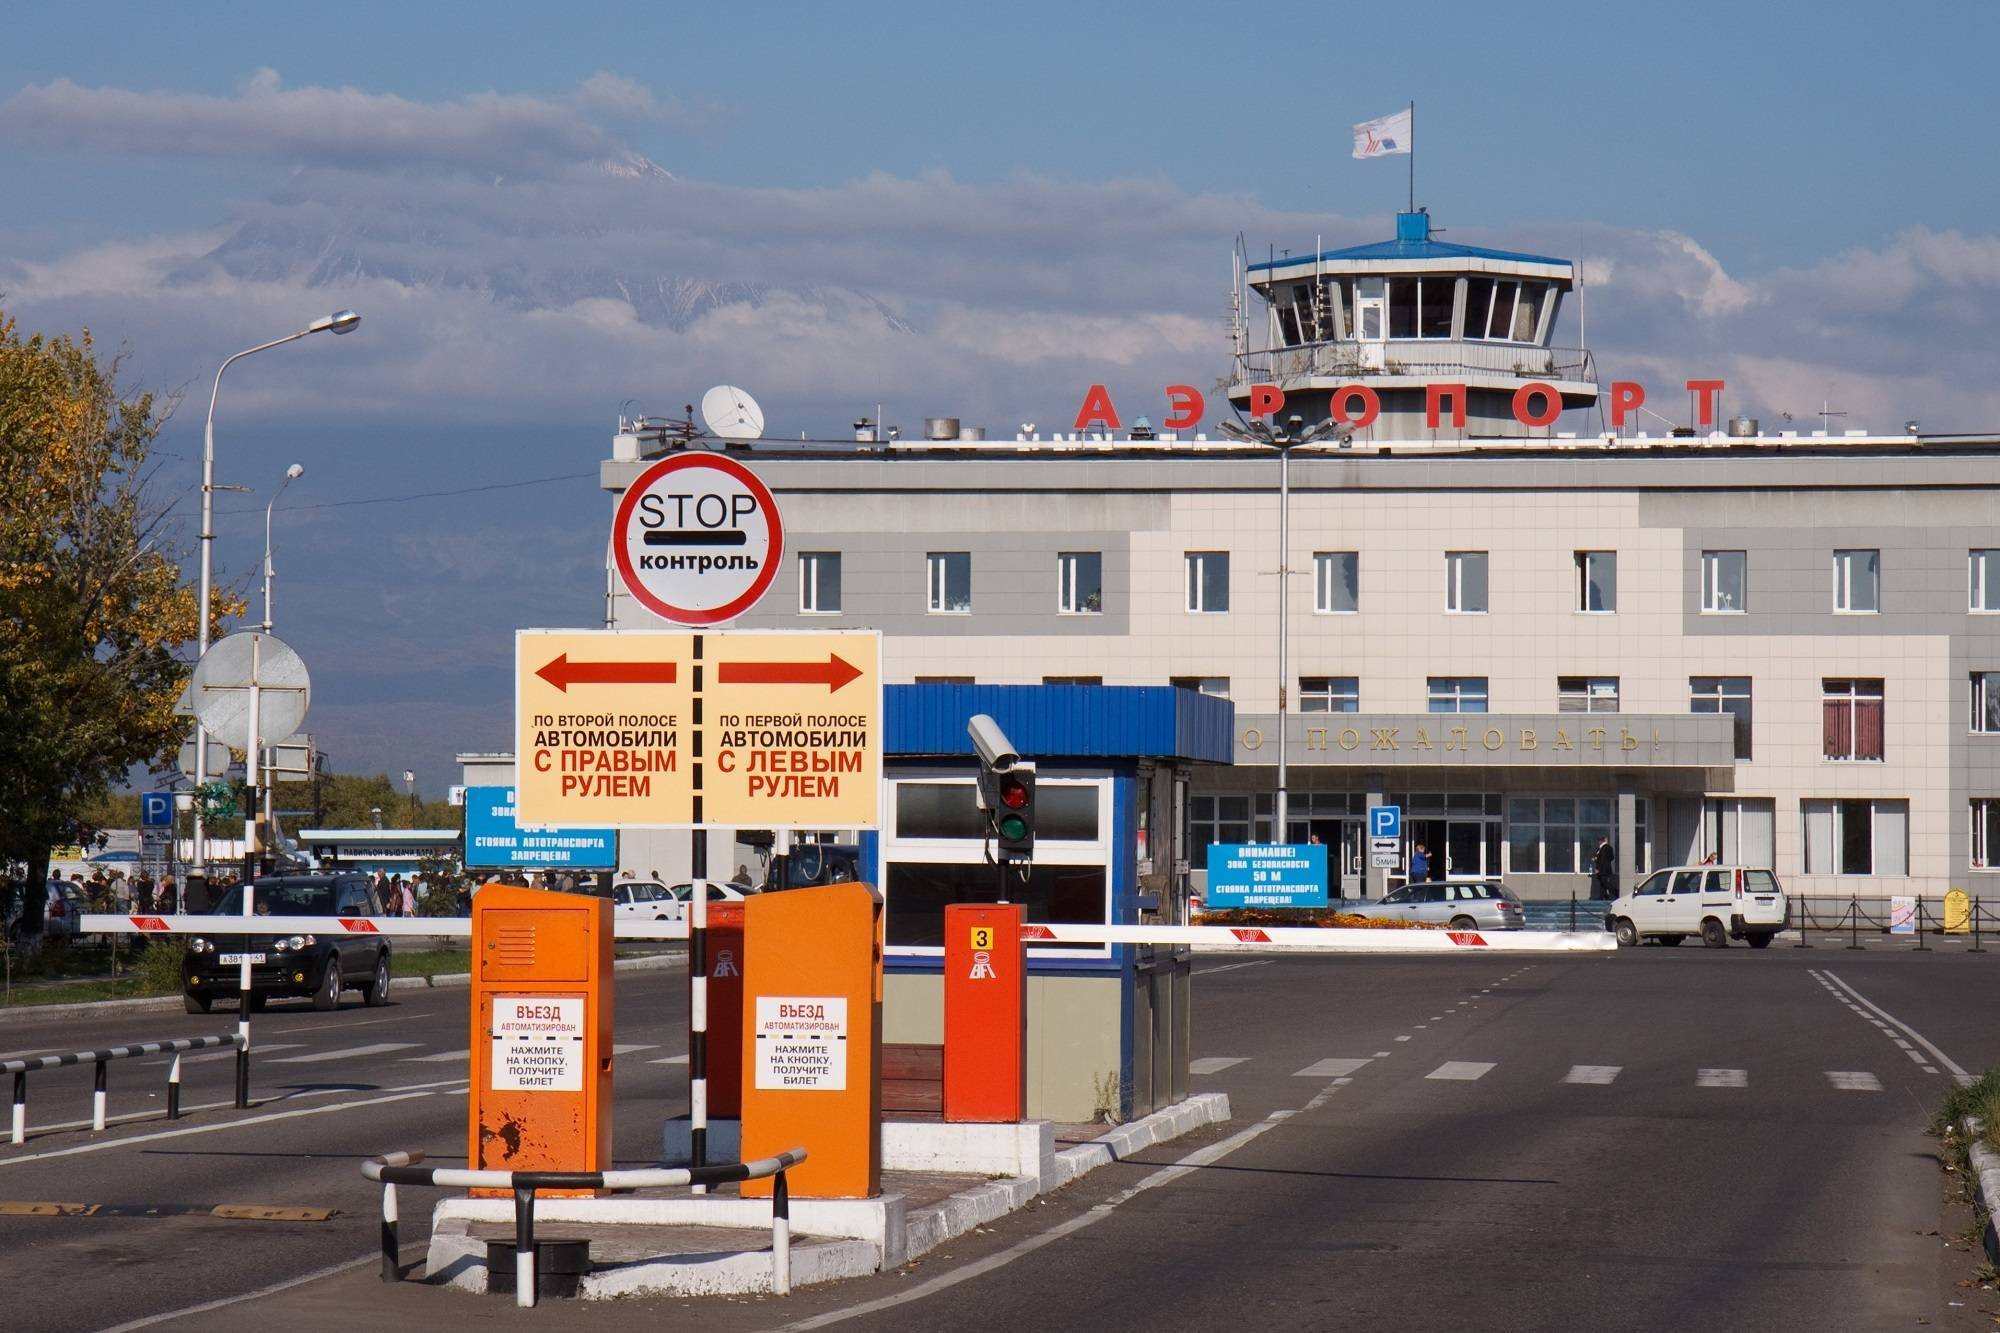 Аэропорт петропавловск-камчатский (pkc): описание международного камчатского аэропорта елизово, в каком городе на камчатке находится, как до него добраться